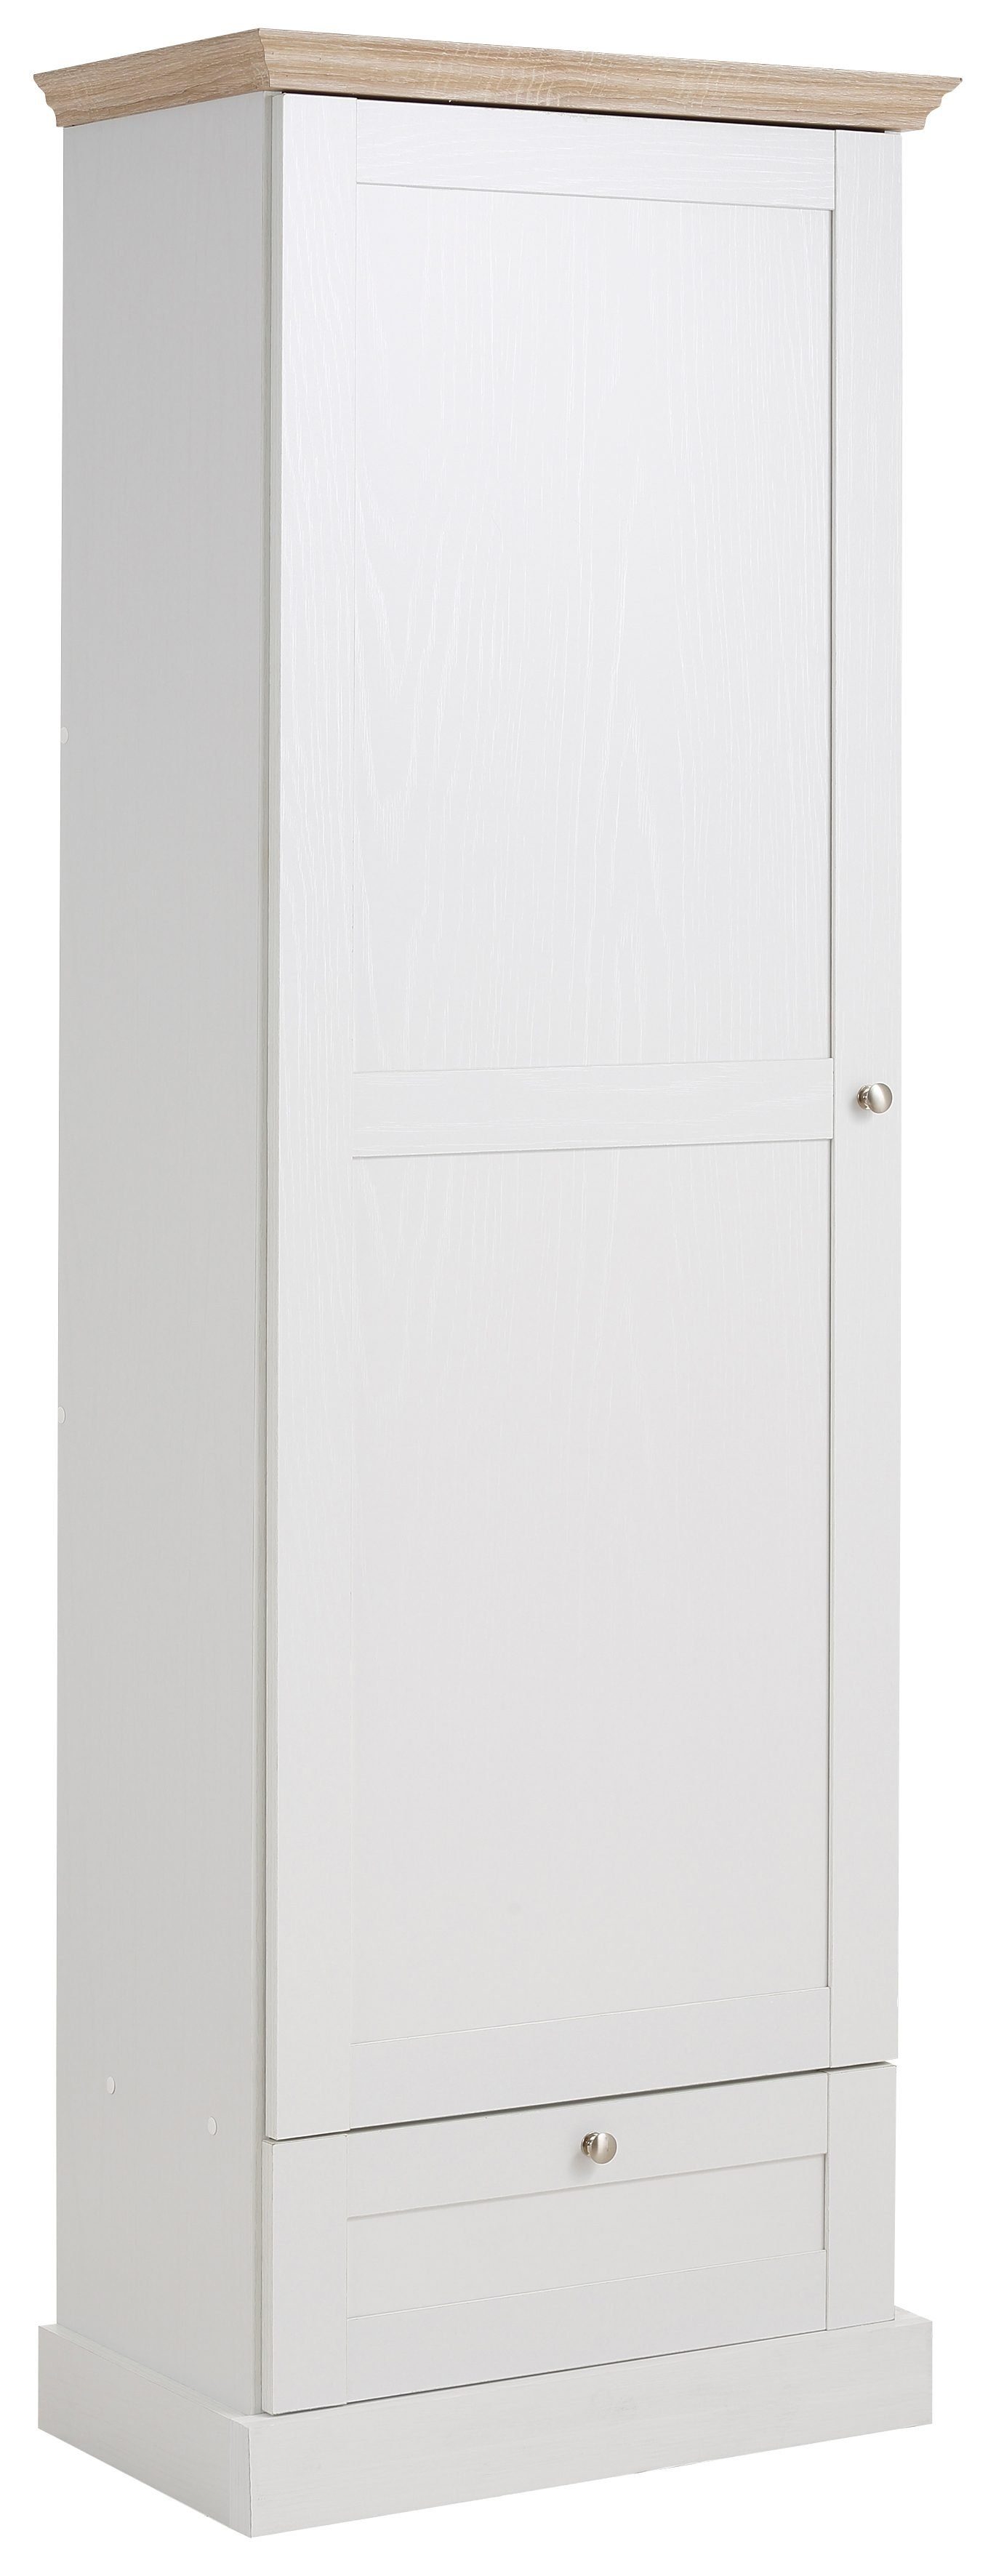 Home affaire Garderobenschrank Binz mit schöner Holzoptik, mit vielen Stauraummöglichkeiten, Höhe 180 cm weiß/eichefarben